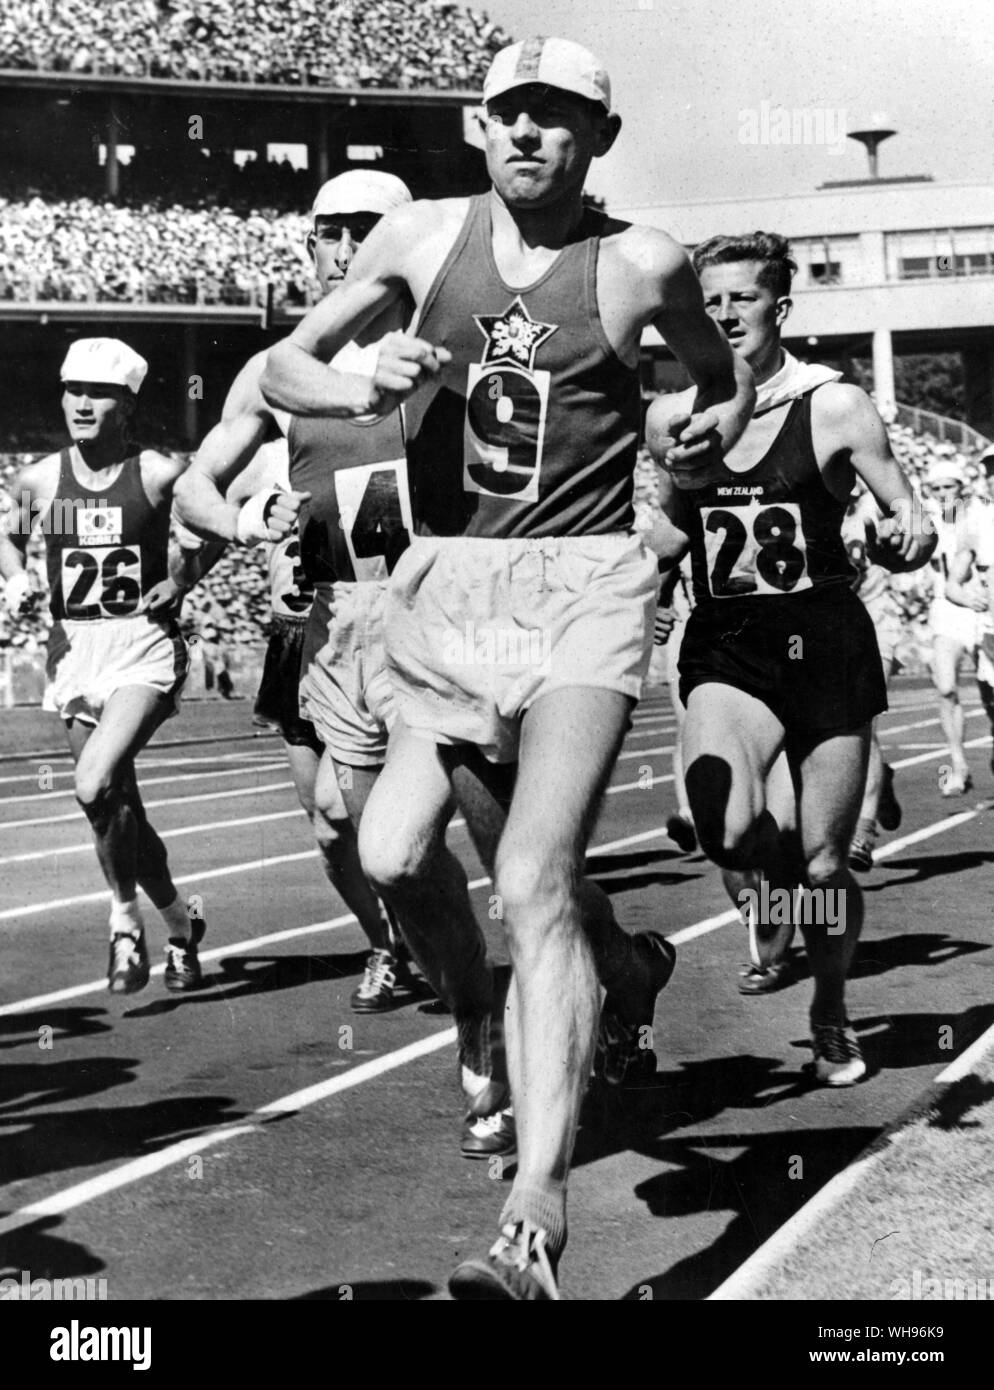 Aus., Melbourne, Jeux Olympiques, 1956 : Emil Zatopek de la Tchécoslovaquie dirige le champ marathon peu après le début.. Banque D'Images